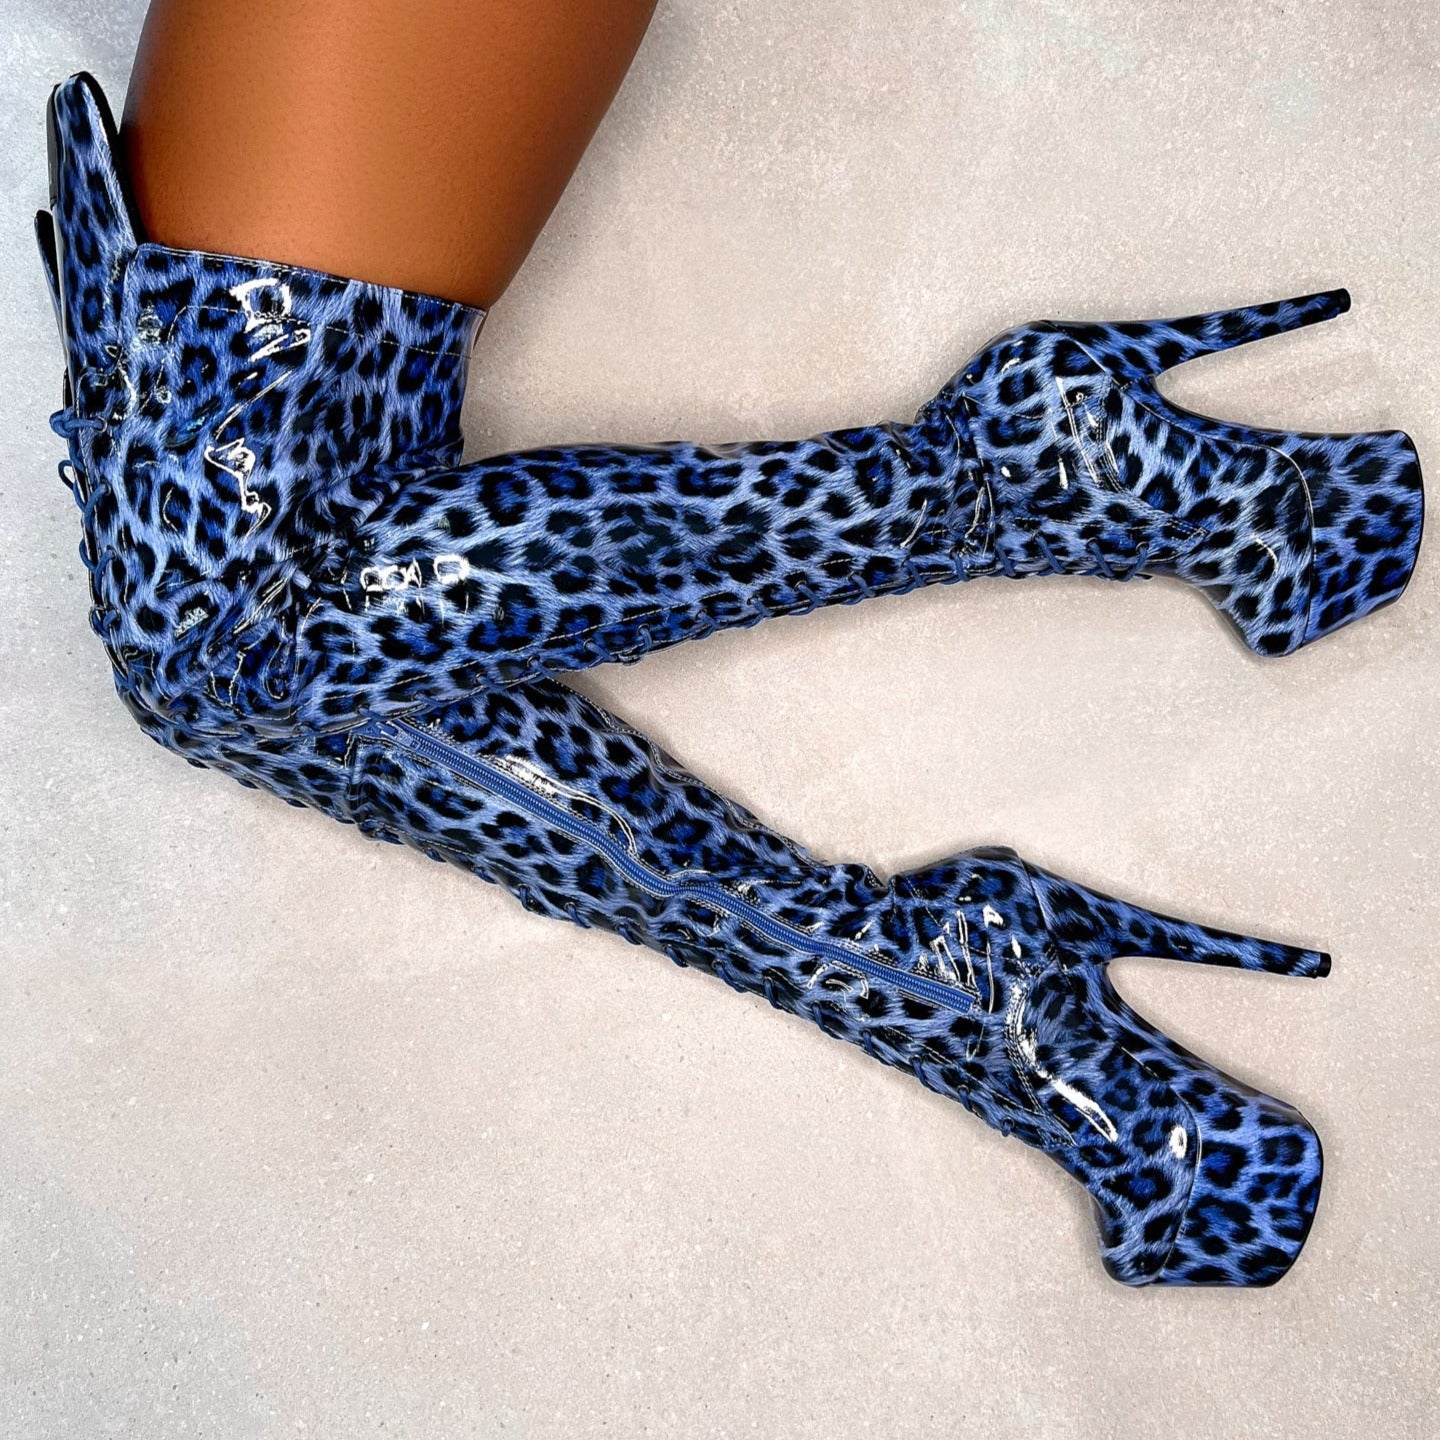 Blue Leopard Thigh High - 7 INCH + SP, stripper shoe, stripper heel, pole heel, not a pleaser, platform, dancer, pole dance, floor work